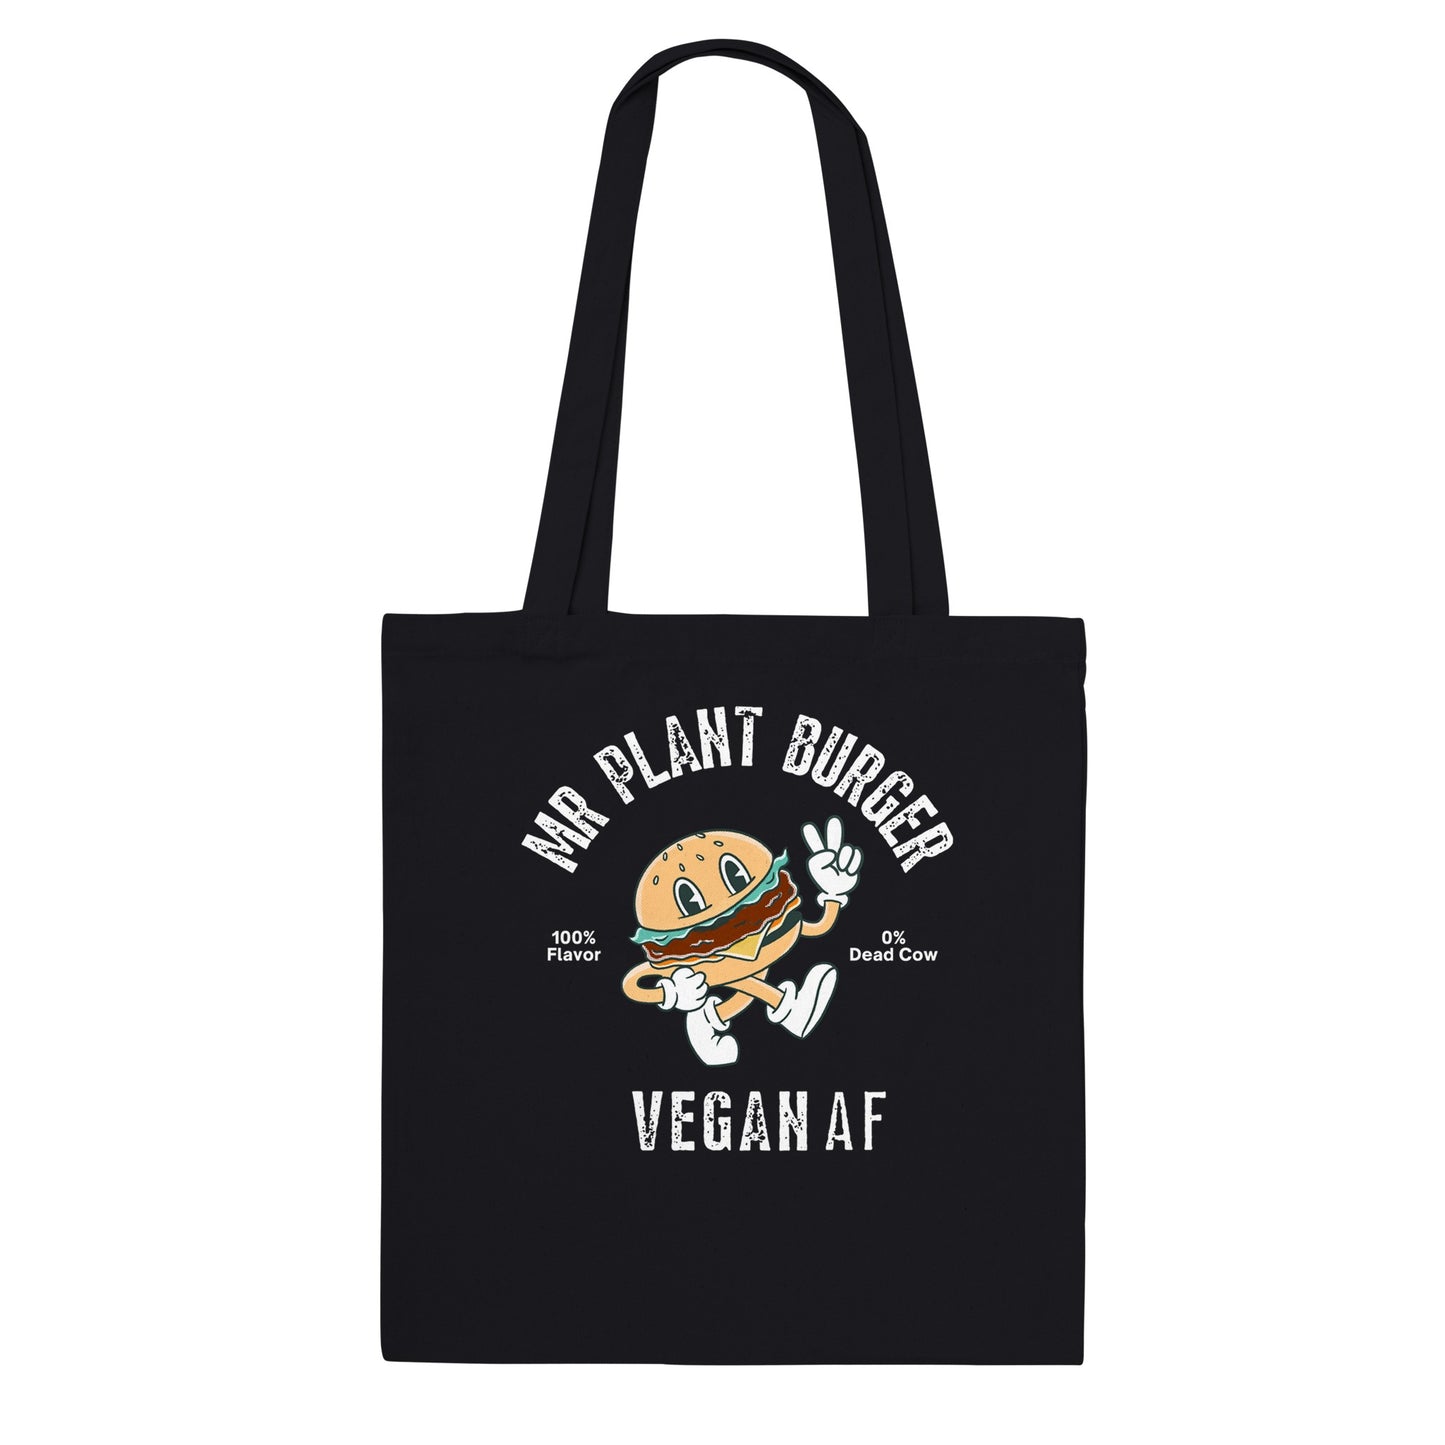 Mr Plant Burger Tote Bag